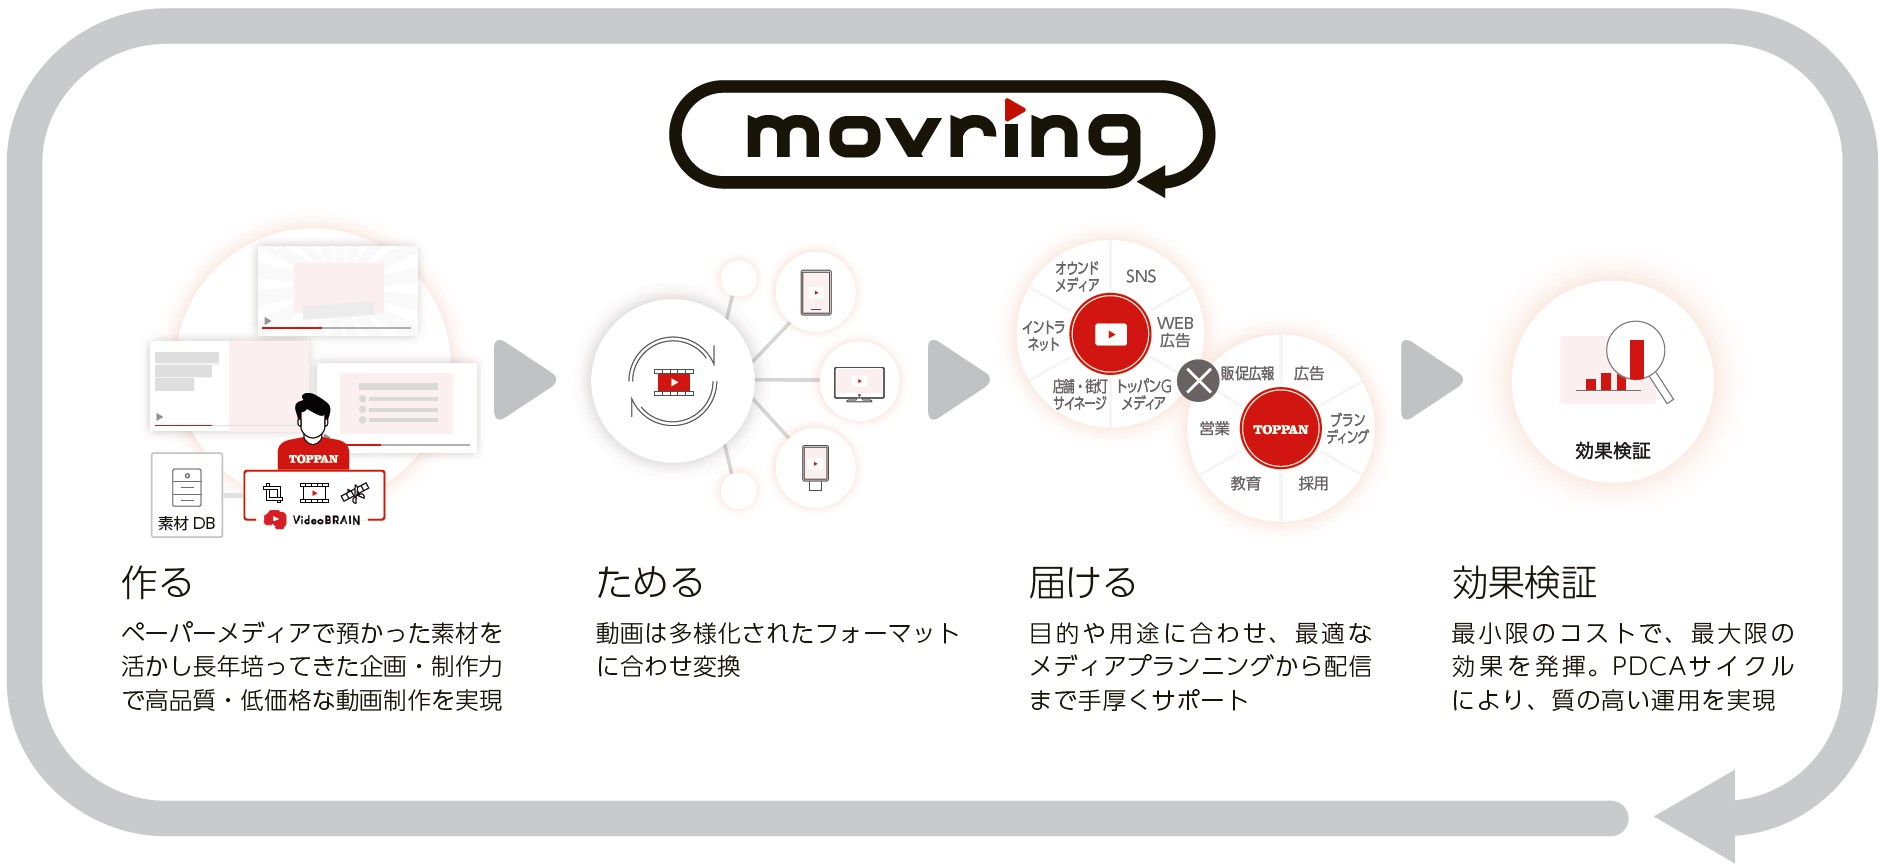 動画作成サービス「movring（モブリン）」サービスイメージ